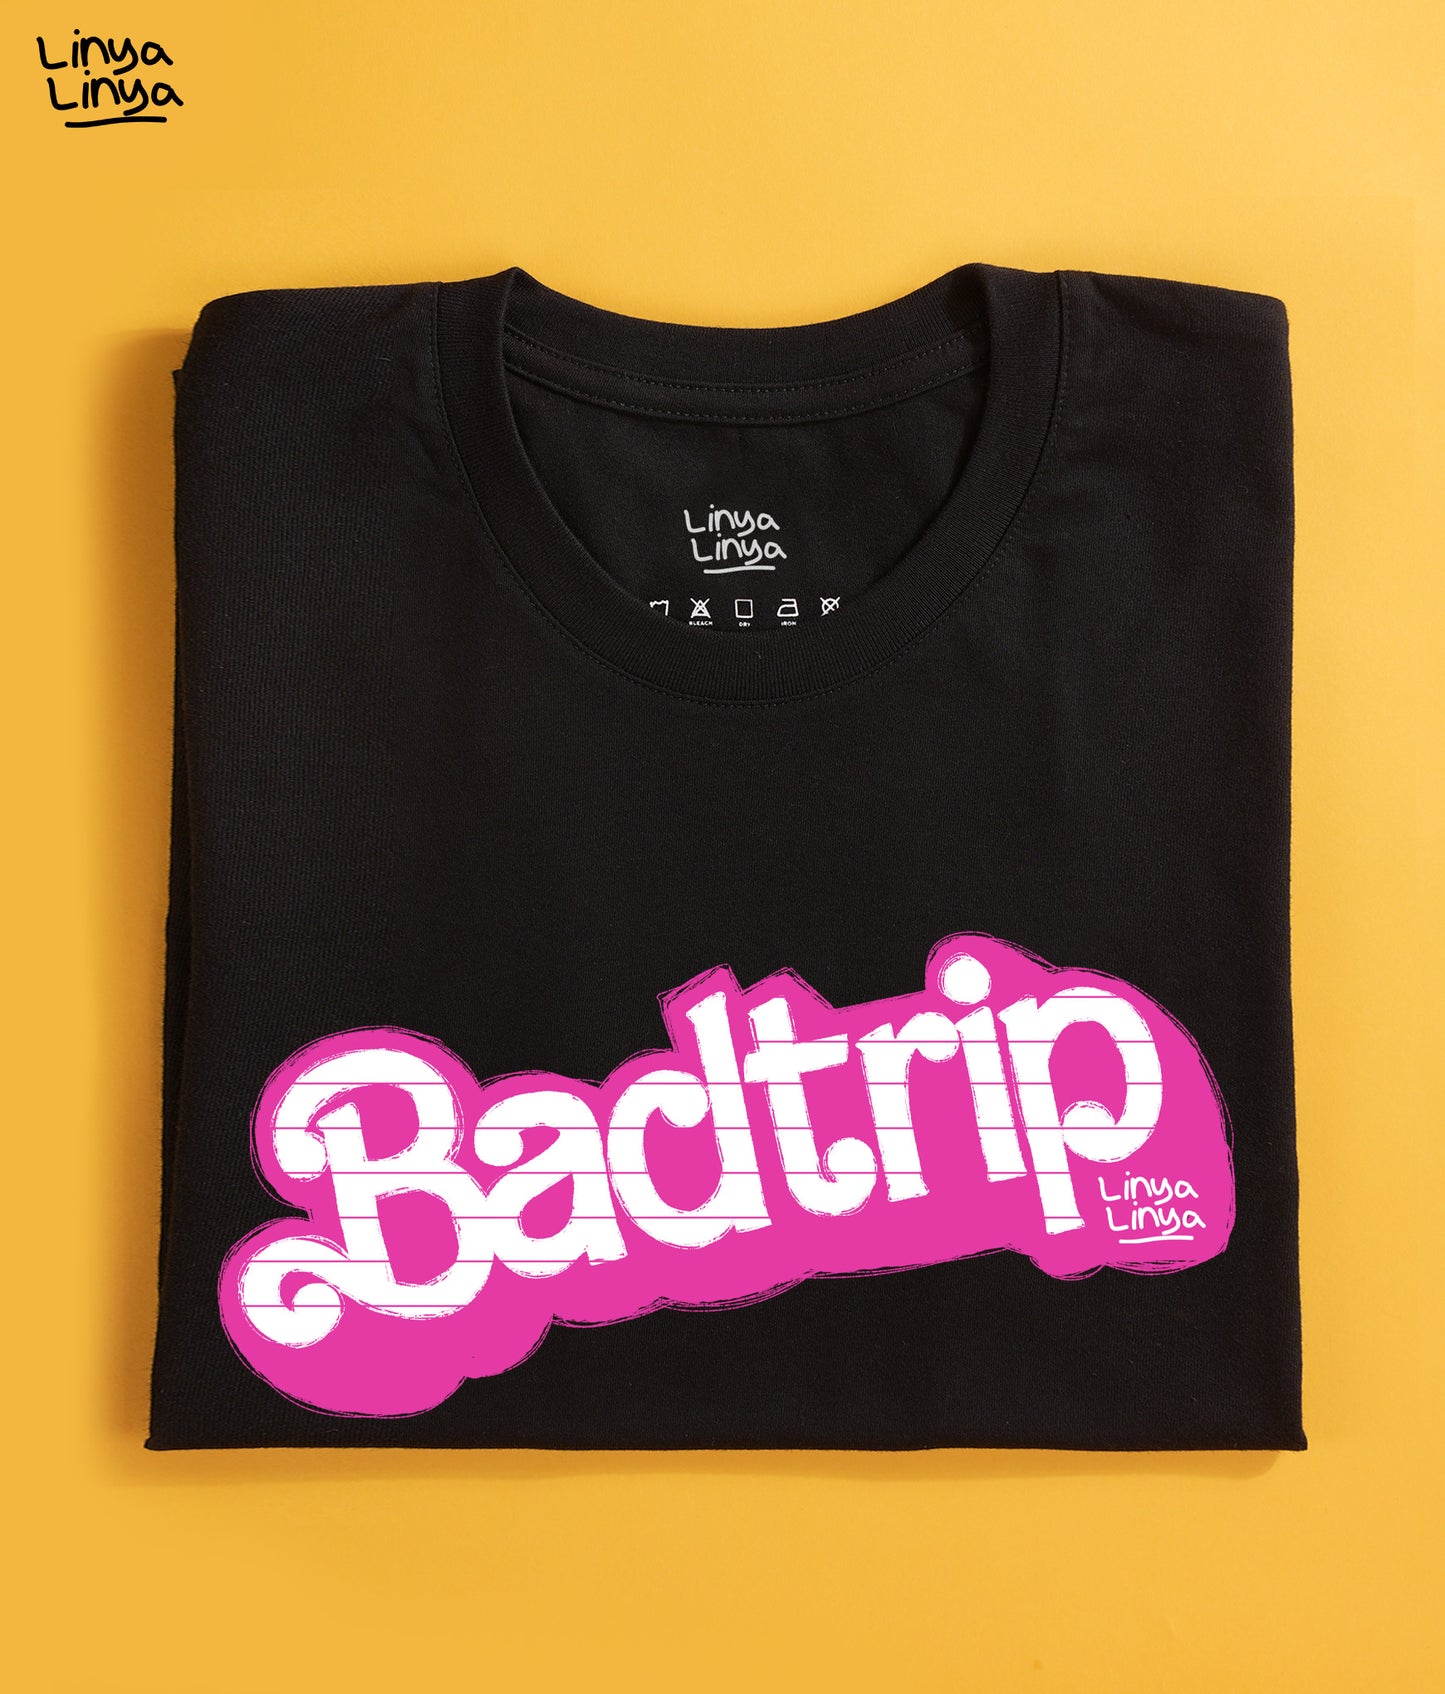 Badtrip (Black)